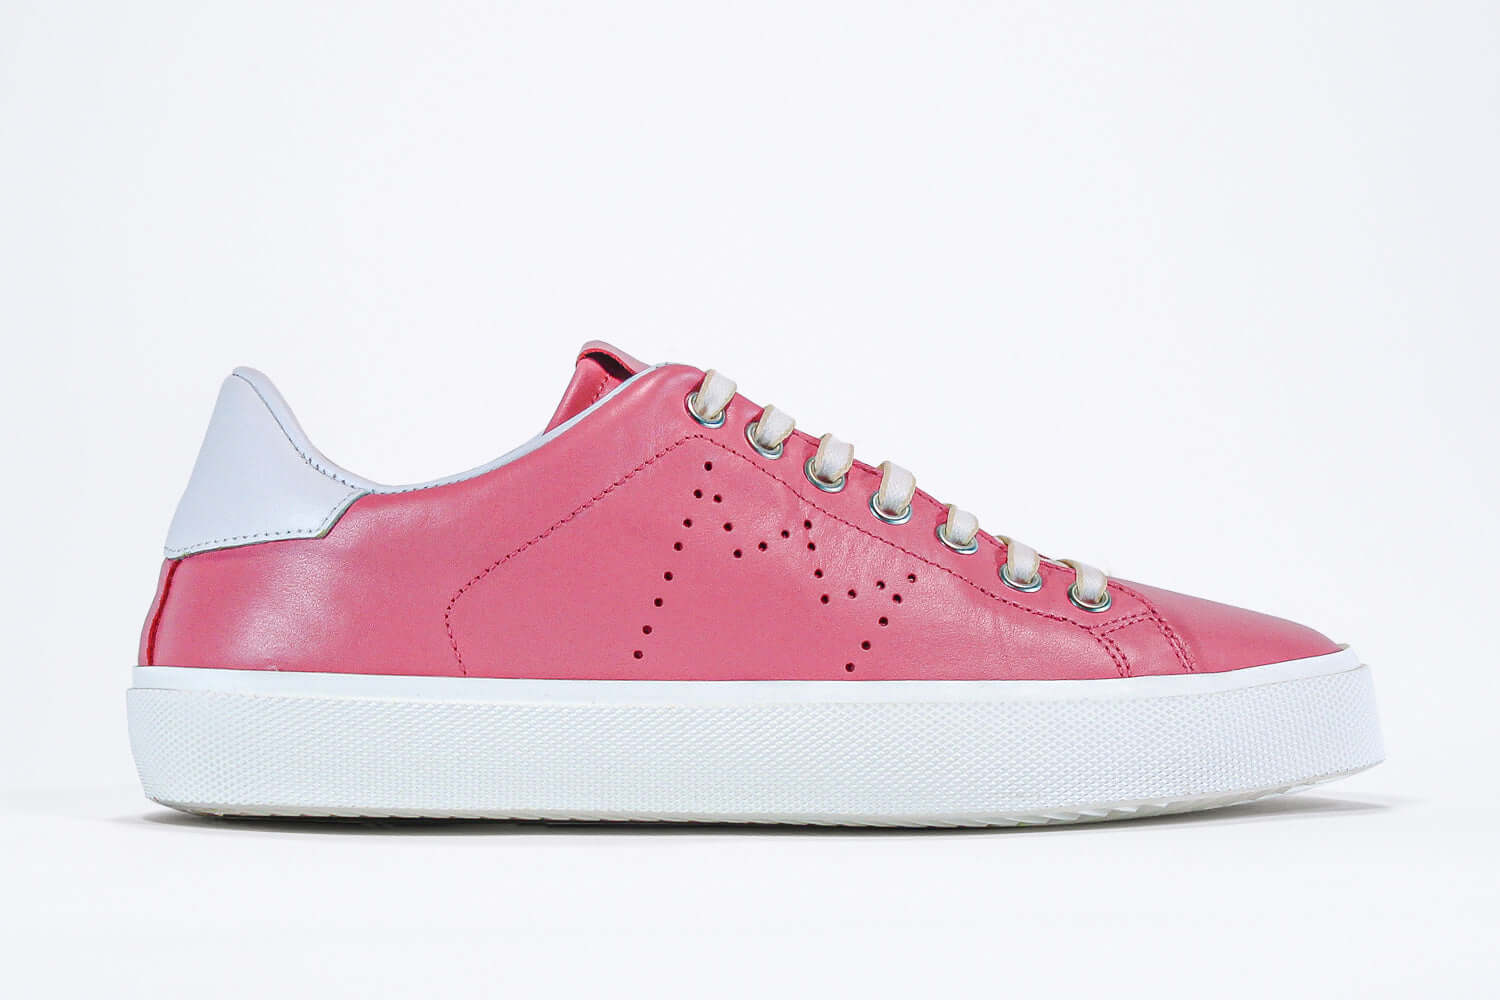 Seitenansicht des rosafarbenen Low Top sneaker mit weißen Details und perforiertem Kronenlogo auf dem Obermaterial. Obermaterial aus Vollleder und weiße Gummisohle.